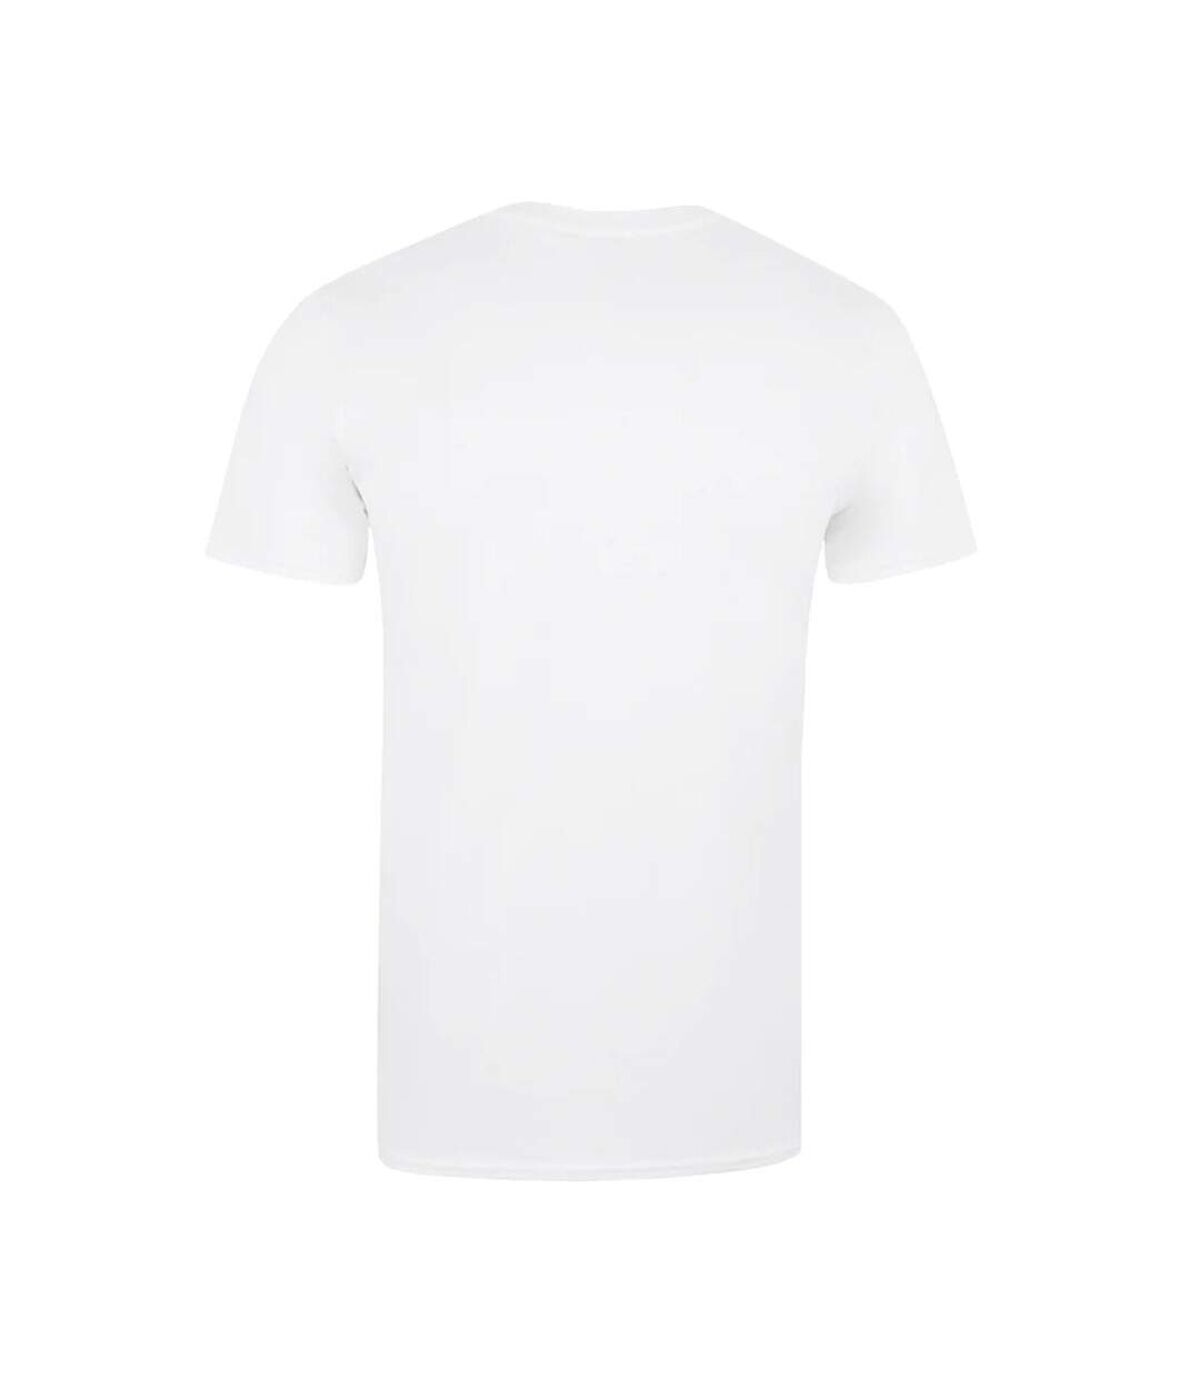 Fender - T-shirt - Homme (Blanc) - UTTV586